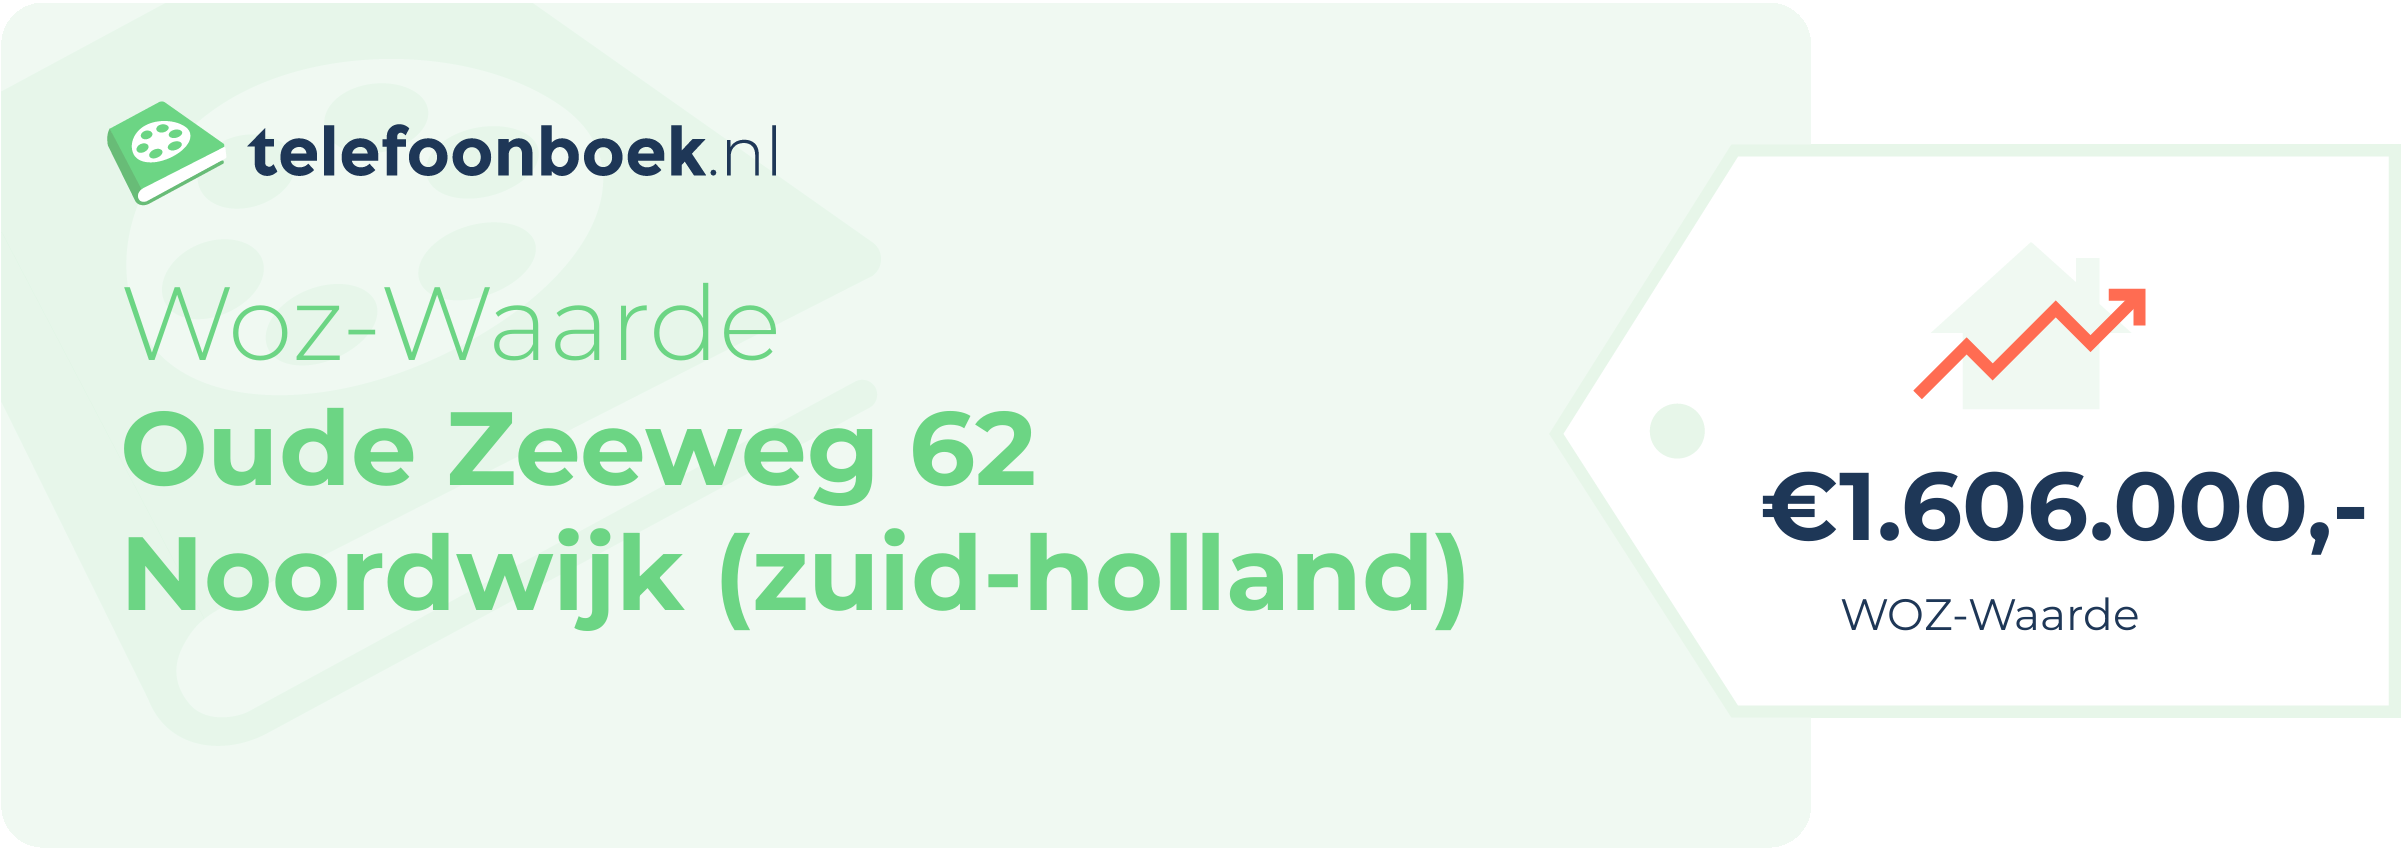 WOZ-waarde Oude Zeeweg 62 Noordwijk (Zuid-Holland)